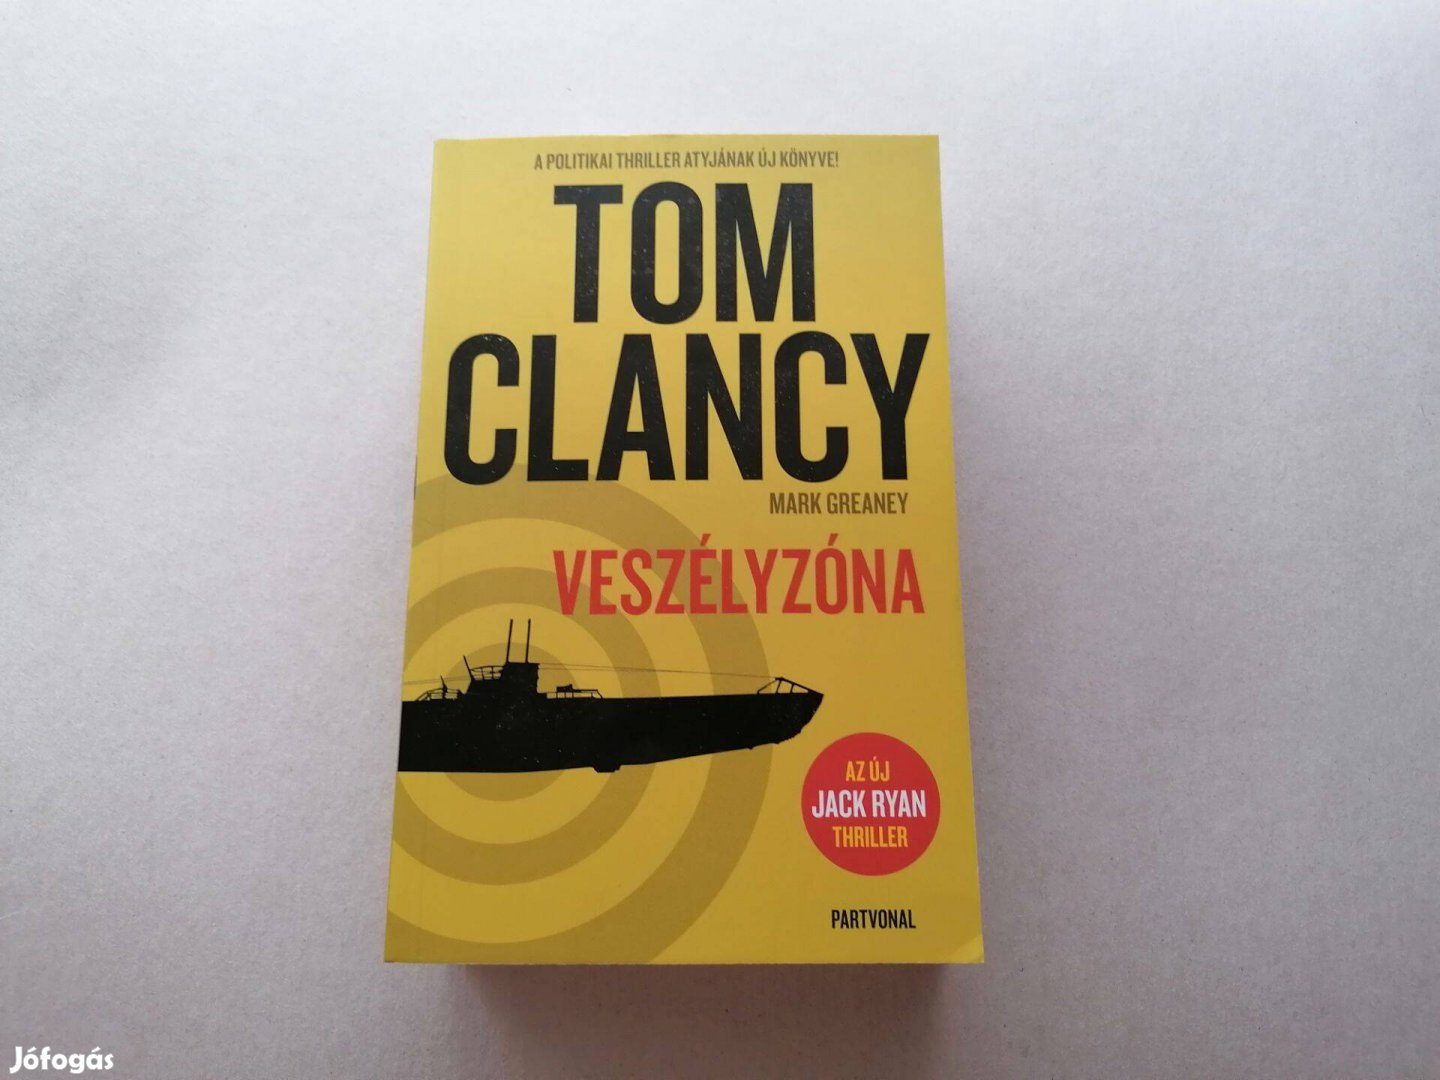 Tom Clancy: Veszélyzóna c. Új könyve eladó !